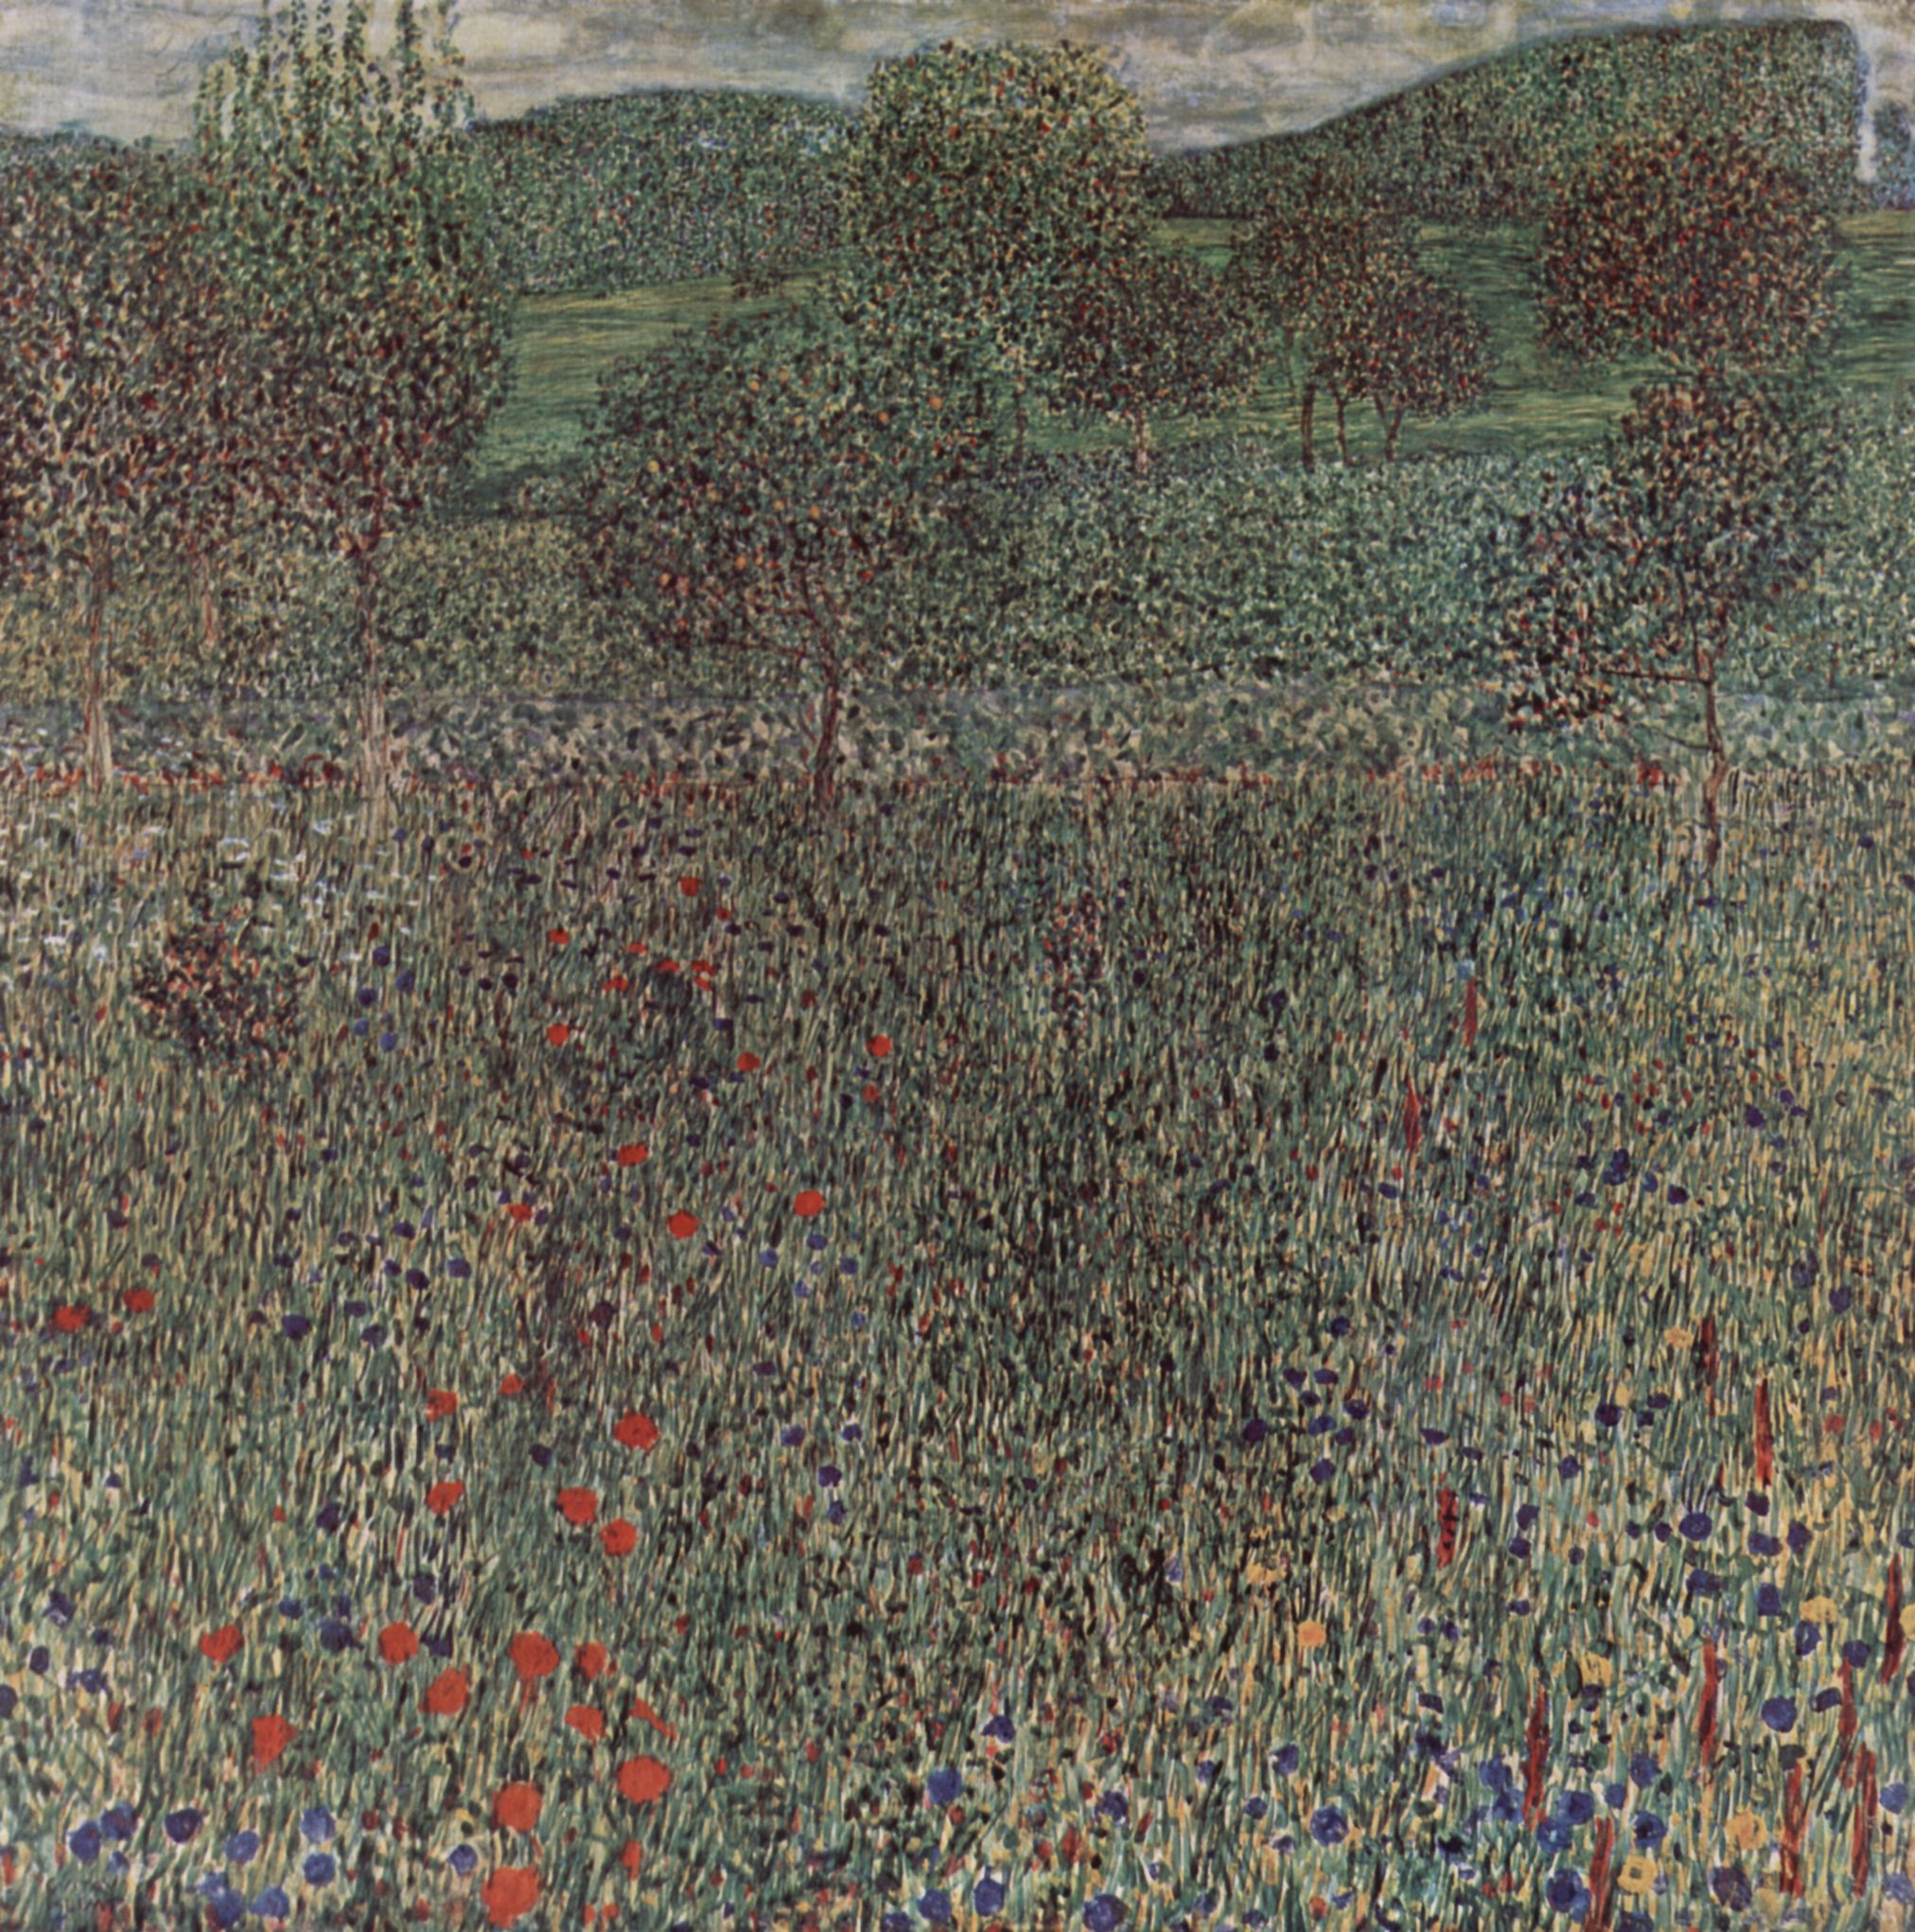 Blooming field (1909).